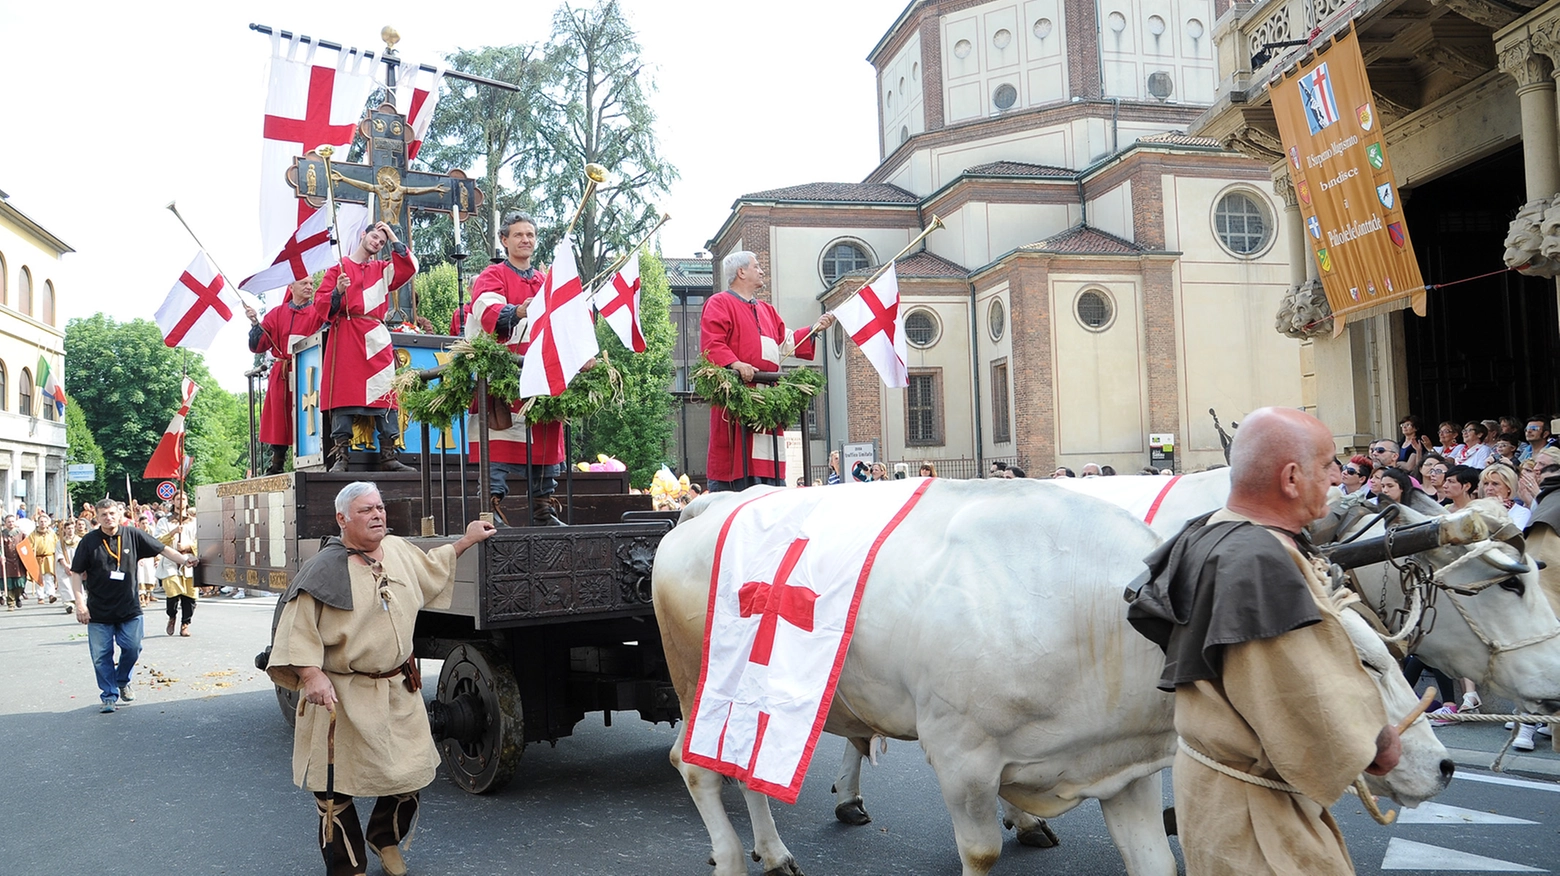 La rievocazione storica della Battaglia di Legnano - 2014 (StudioSally)